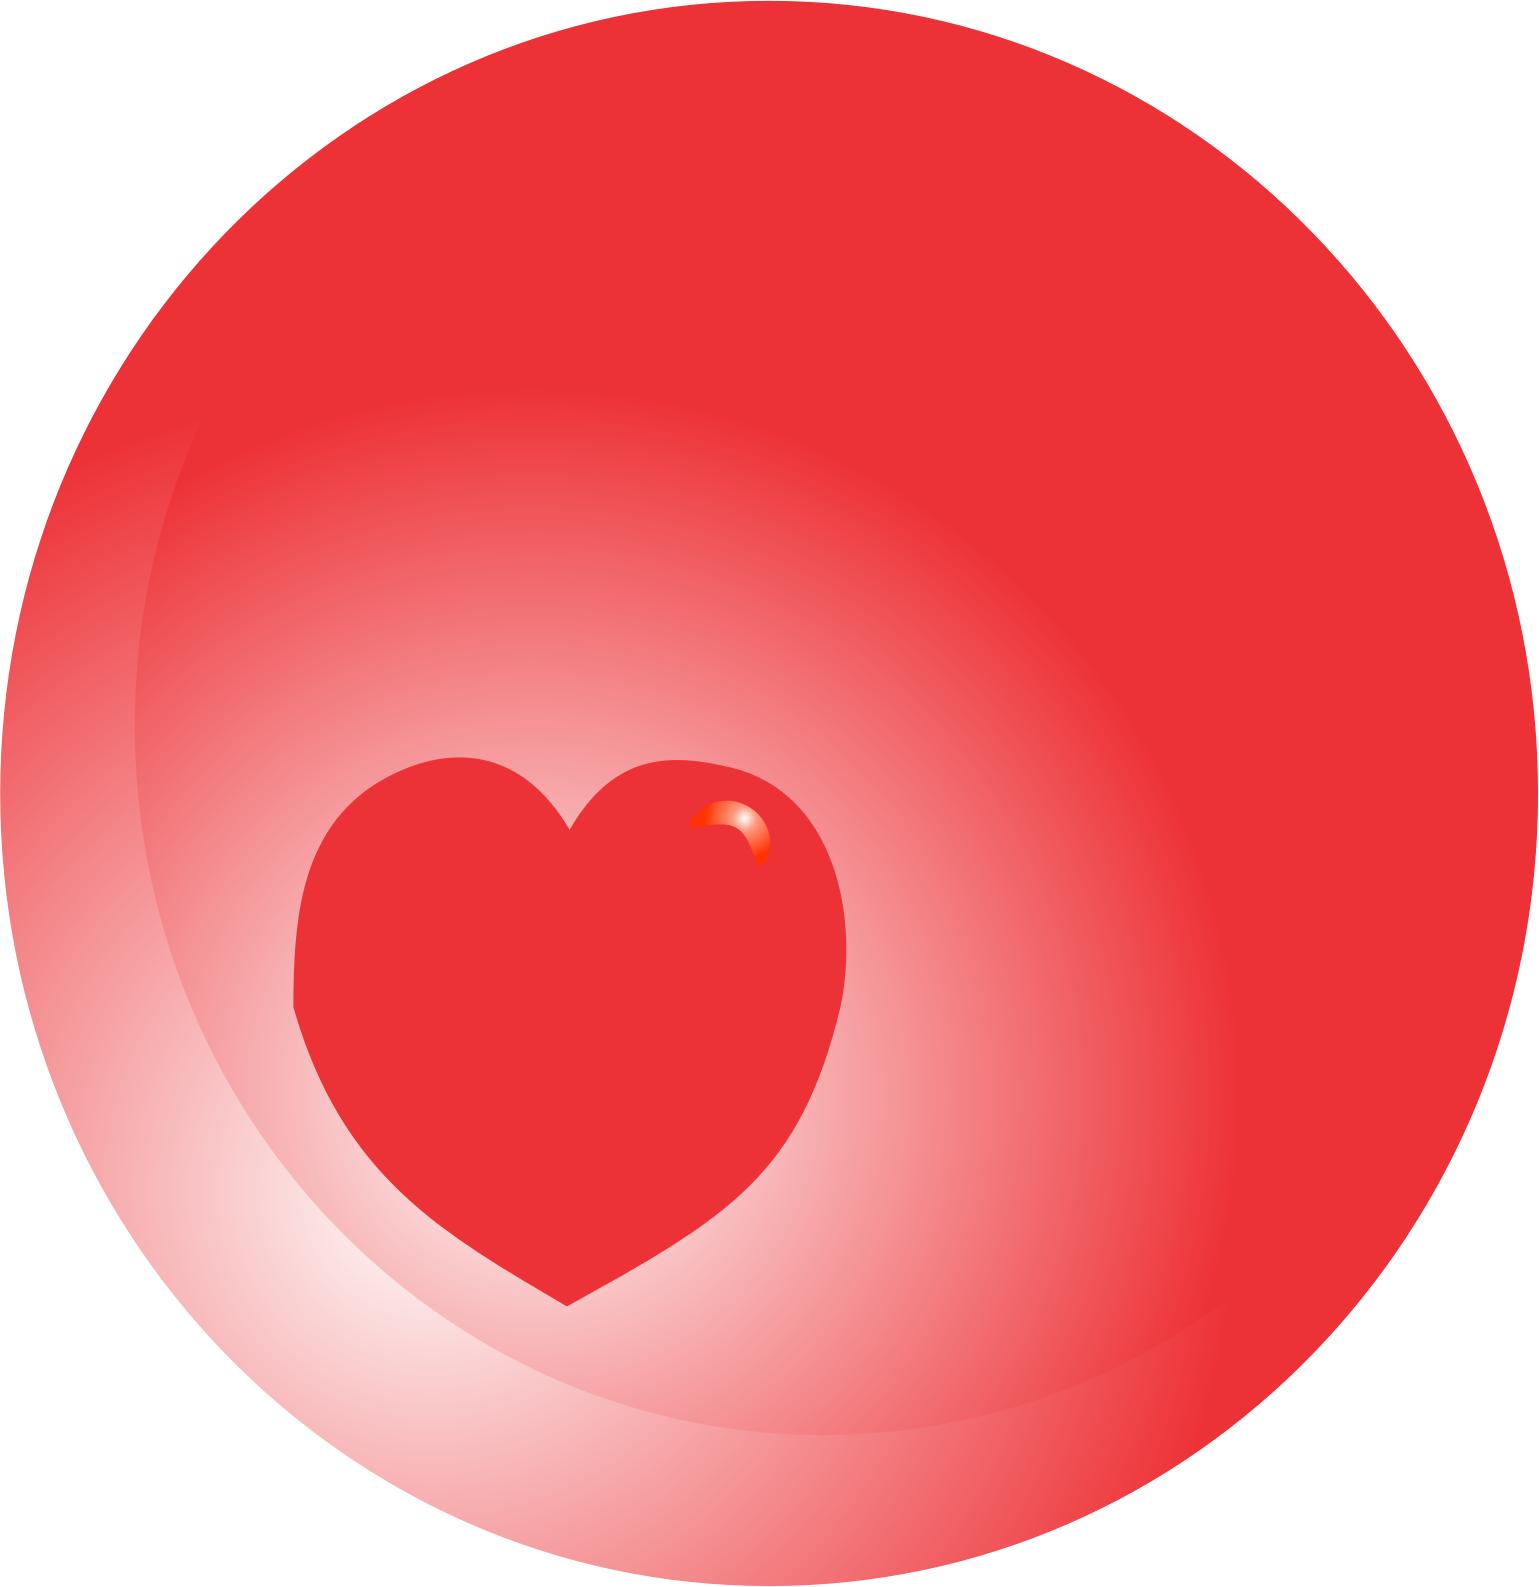 corazon en esfera icons